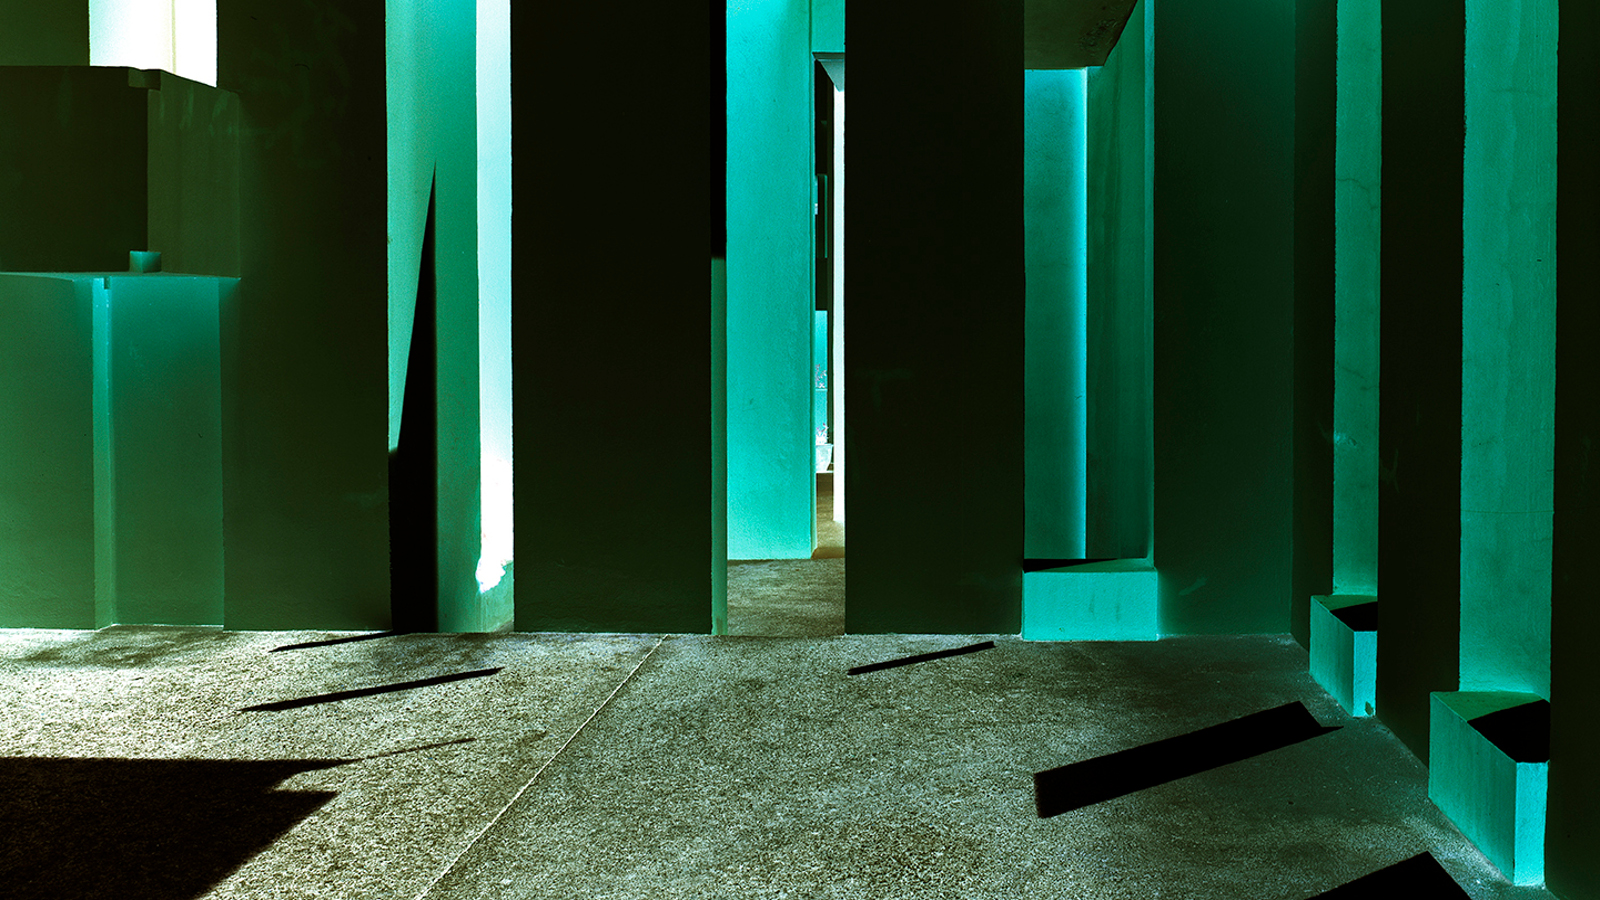 Kuvassa on Ola Kolehmaisen teos Geometric Light ja siinä on vihreitä ja mustia pylväitä  vihertävällä lattialla.  Pylväisiin osuu valoa limittäisten pylväiden väliin tulee piikkimuotoja.  Lattialla on mustaa varjoa vasemmalla.